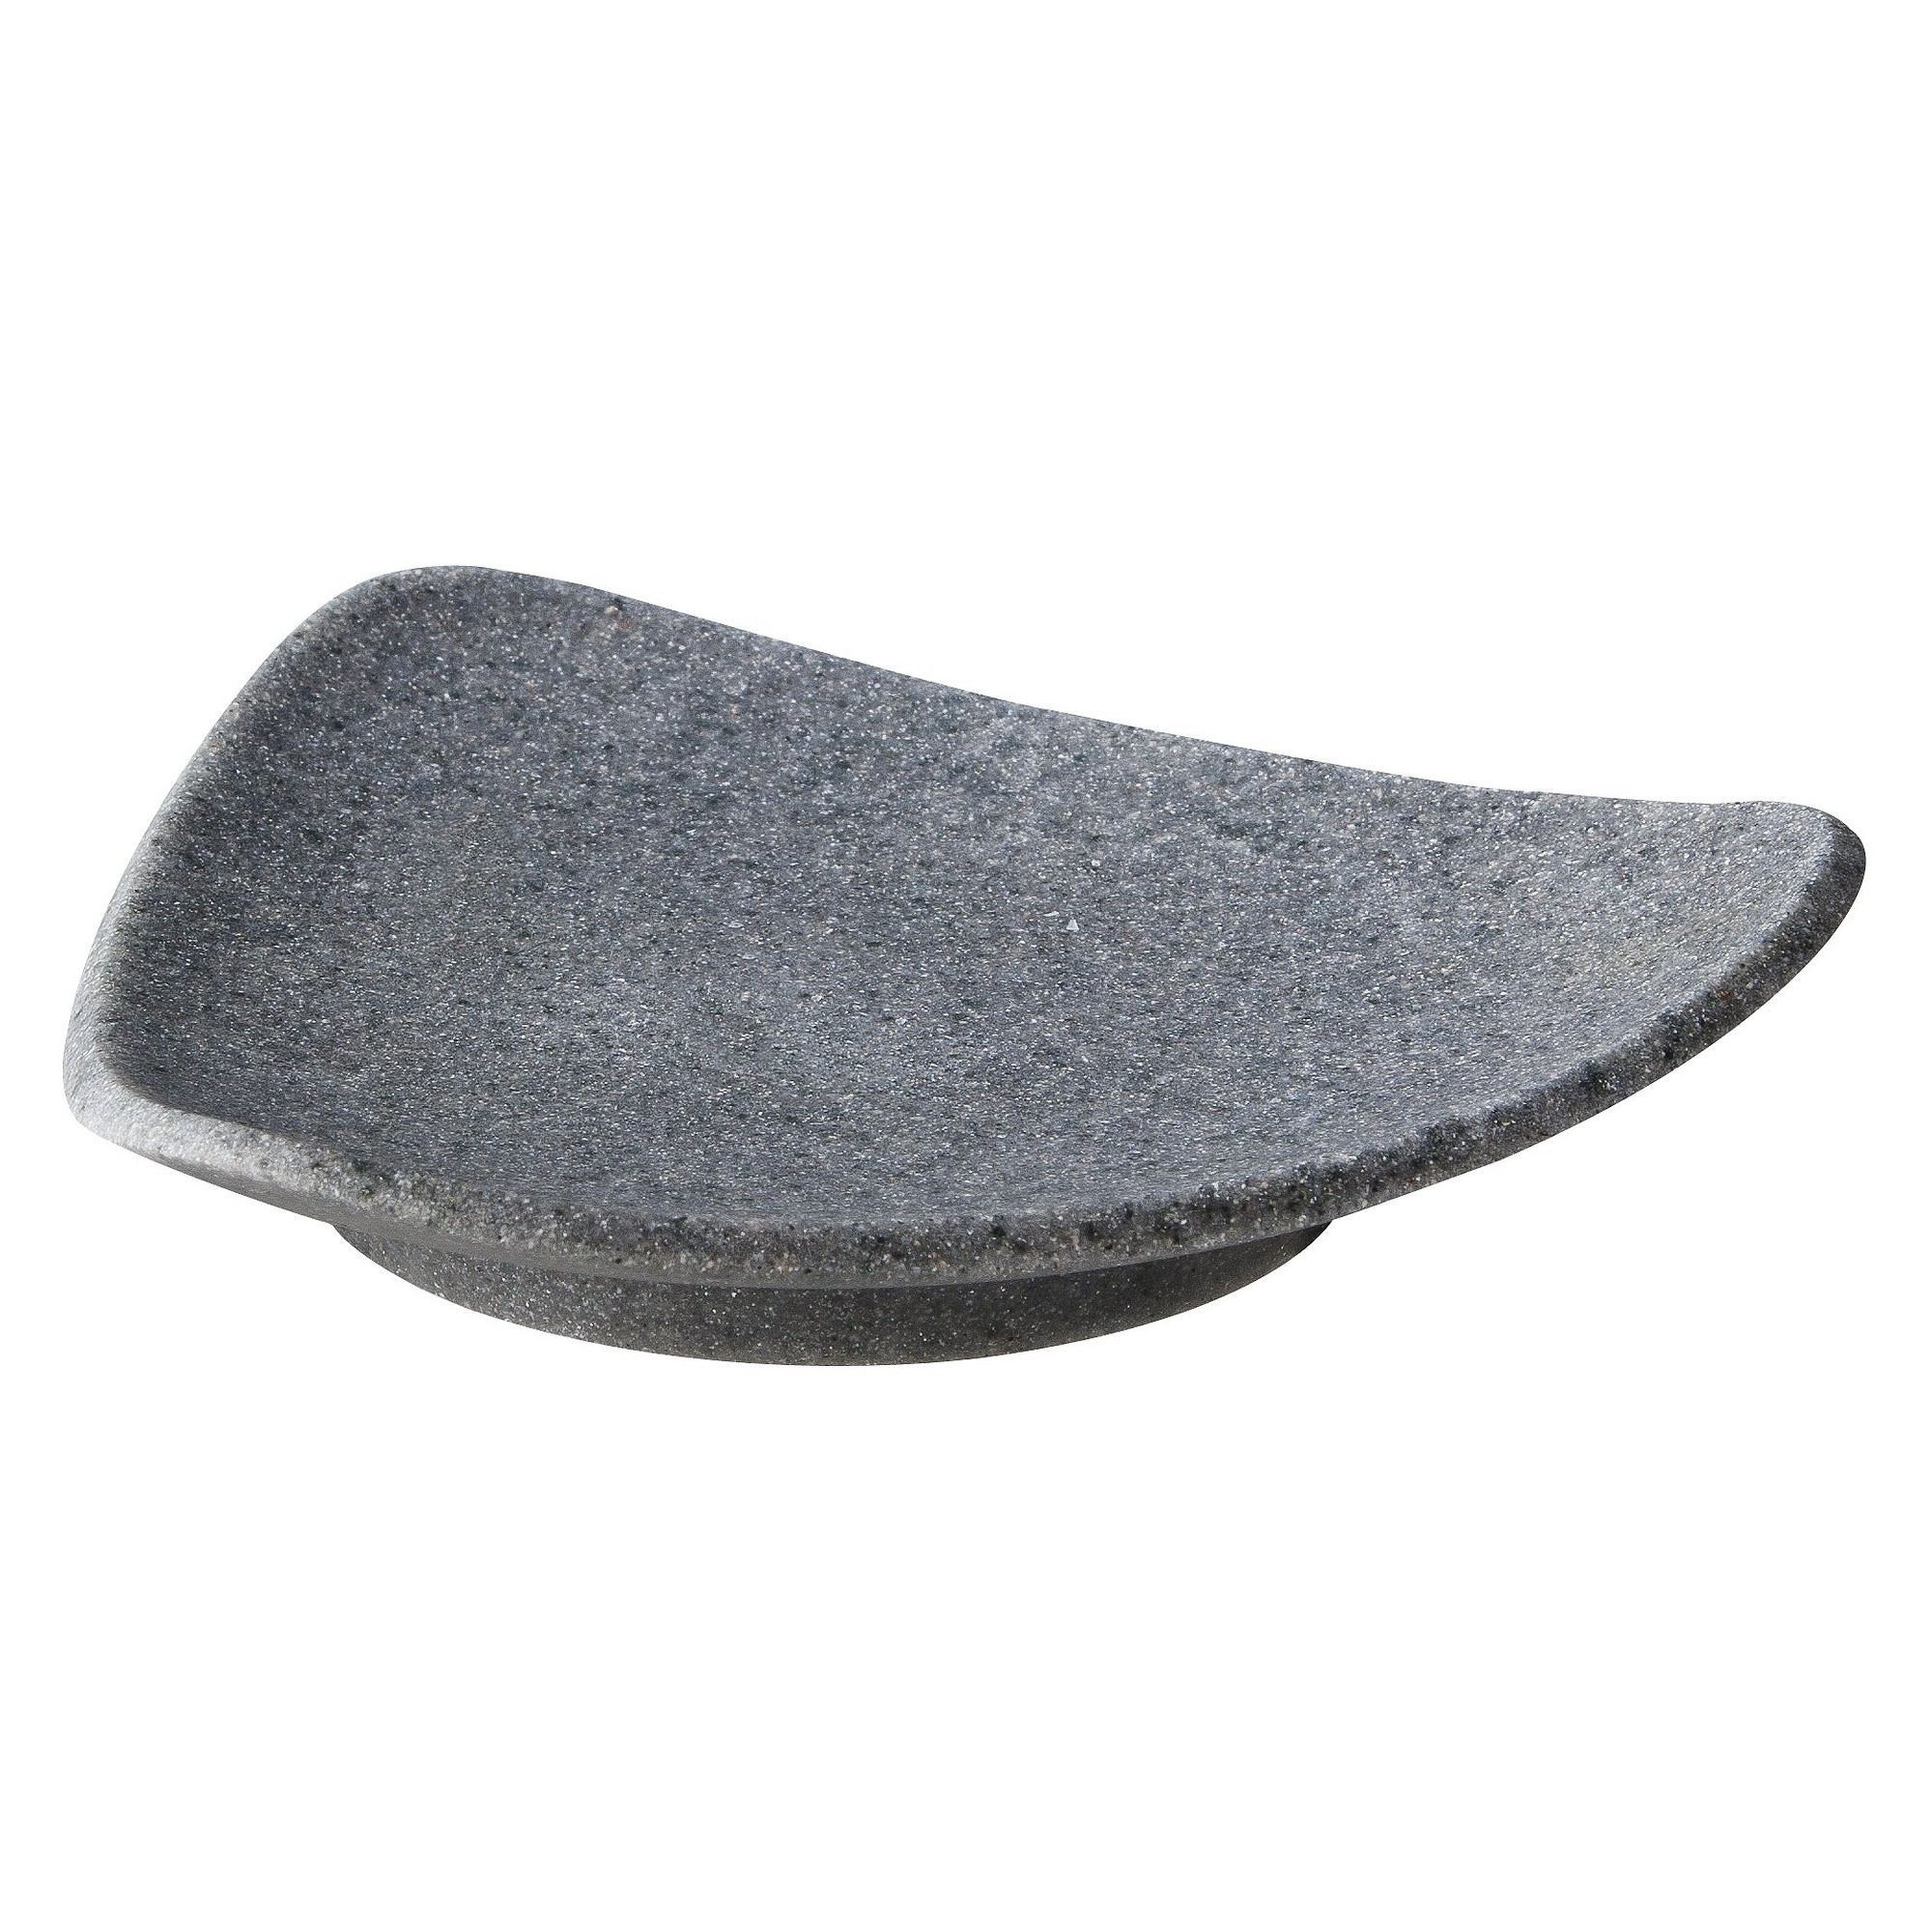 Geo Stone Soap Dish Gray - Allure Home